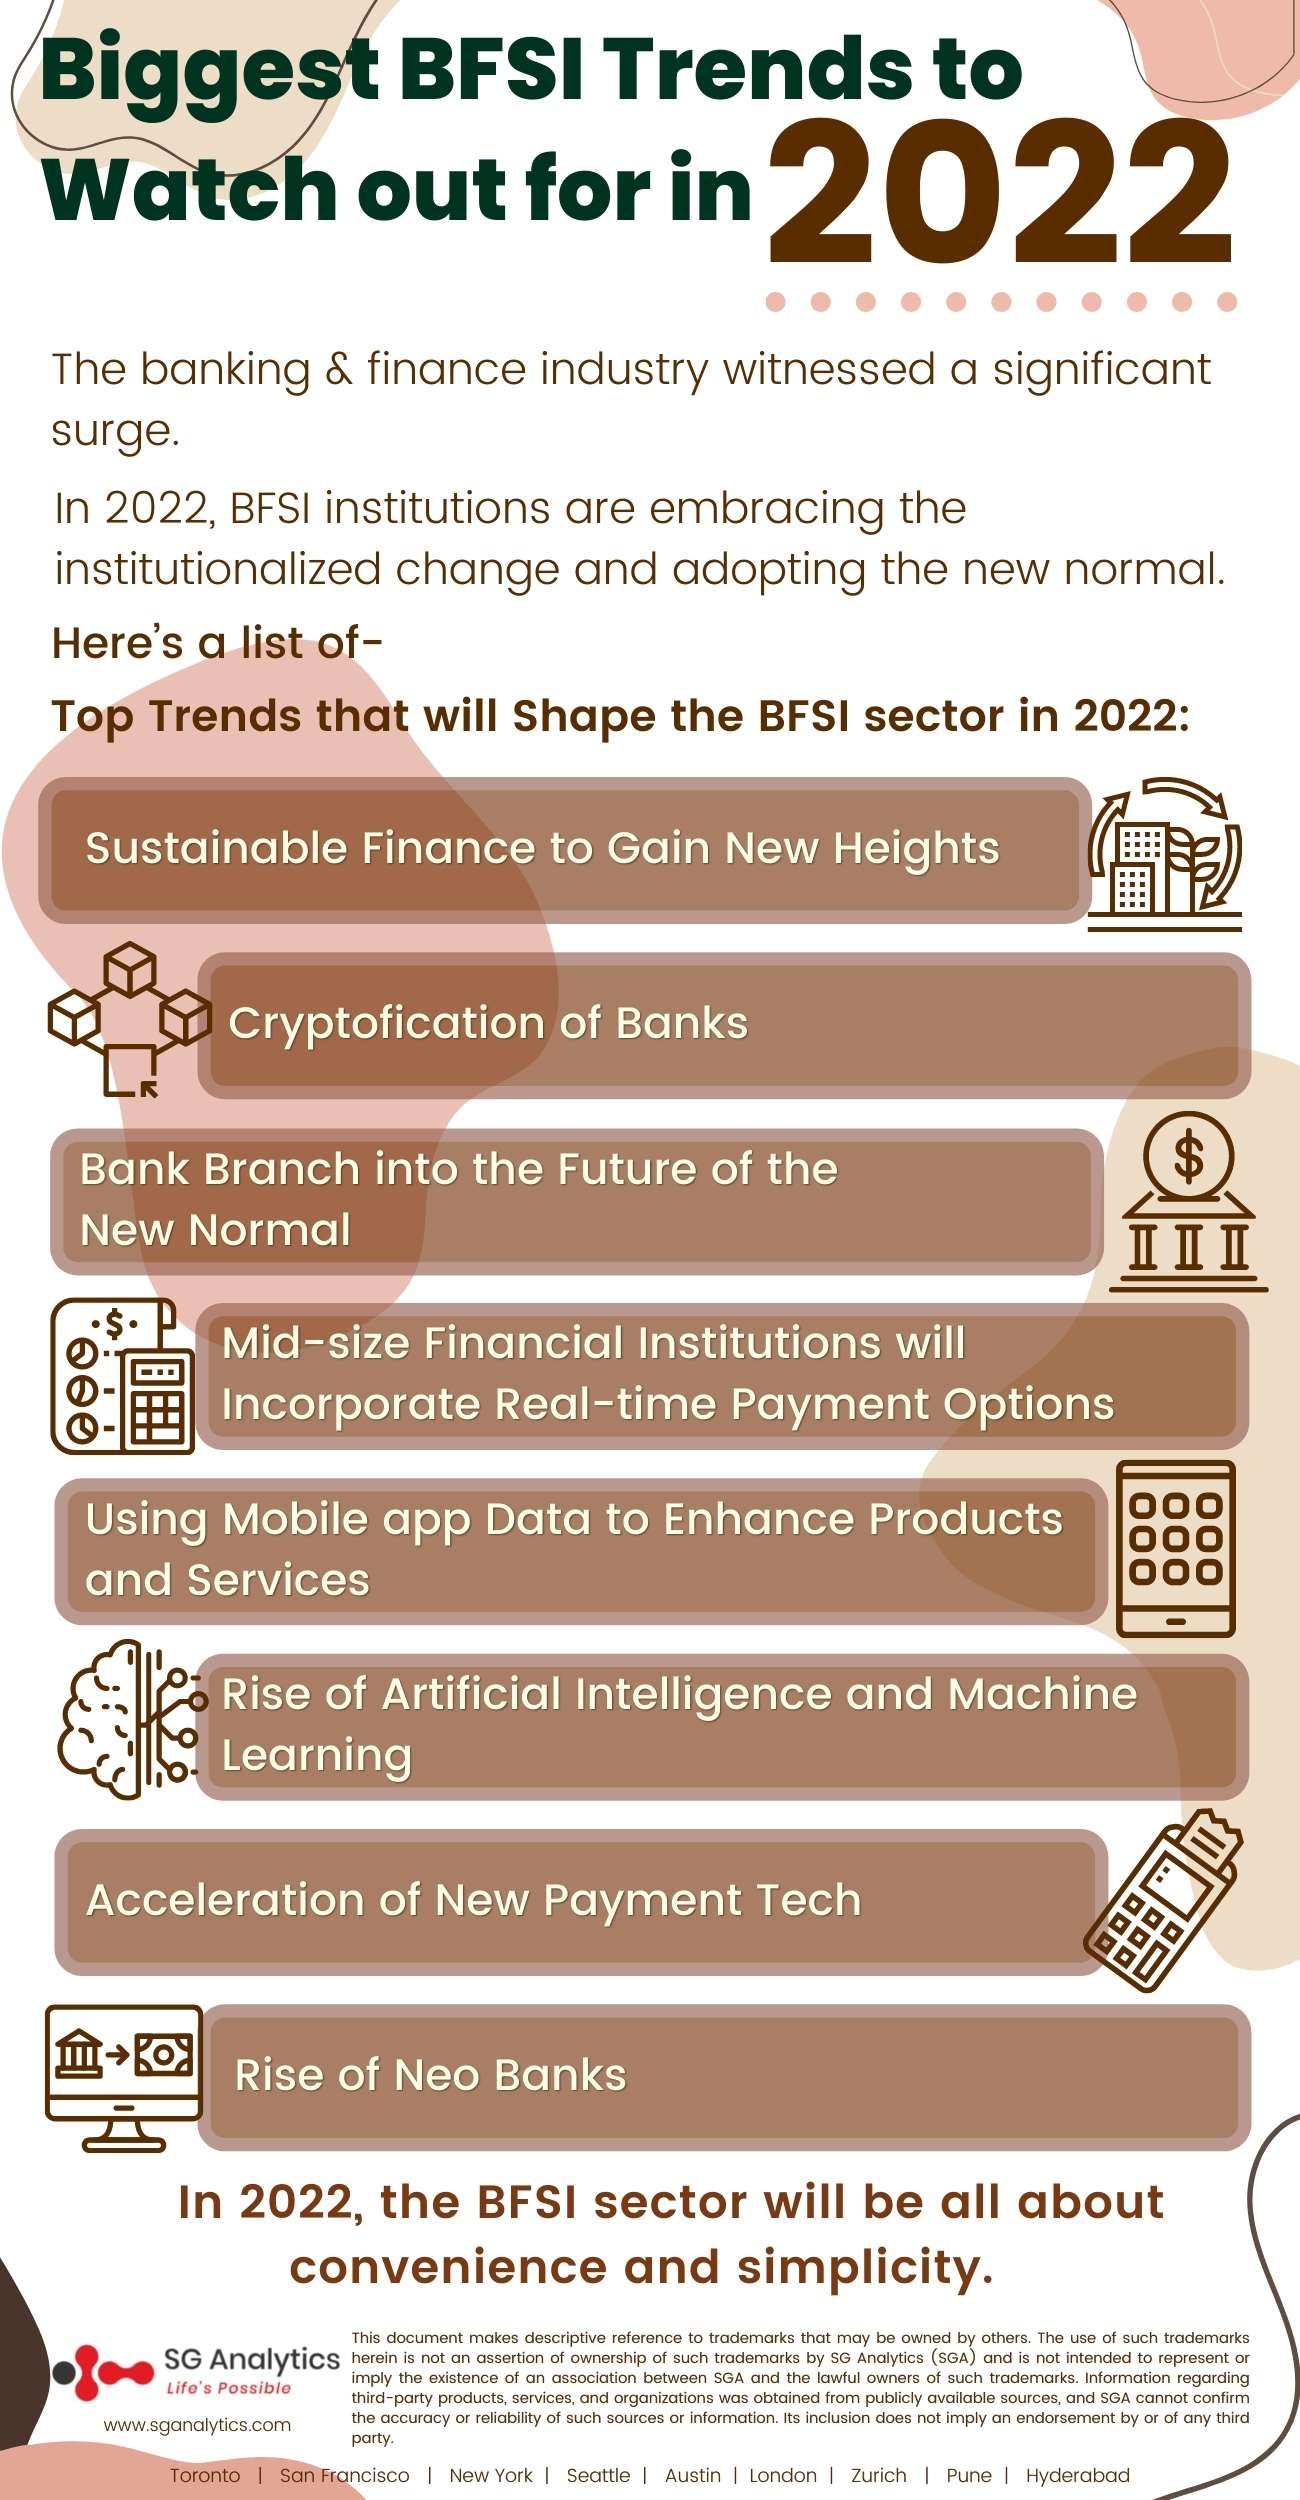 Top BFSI trends 2022